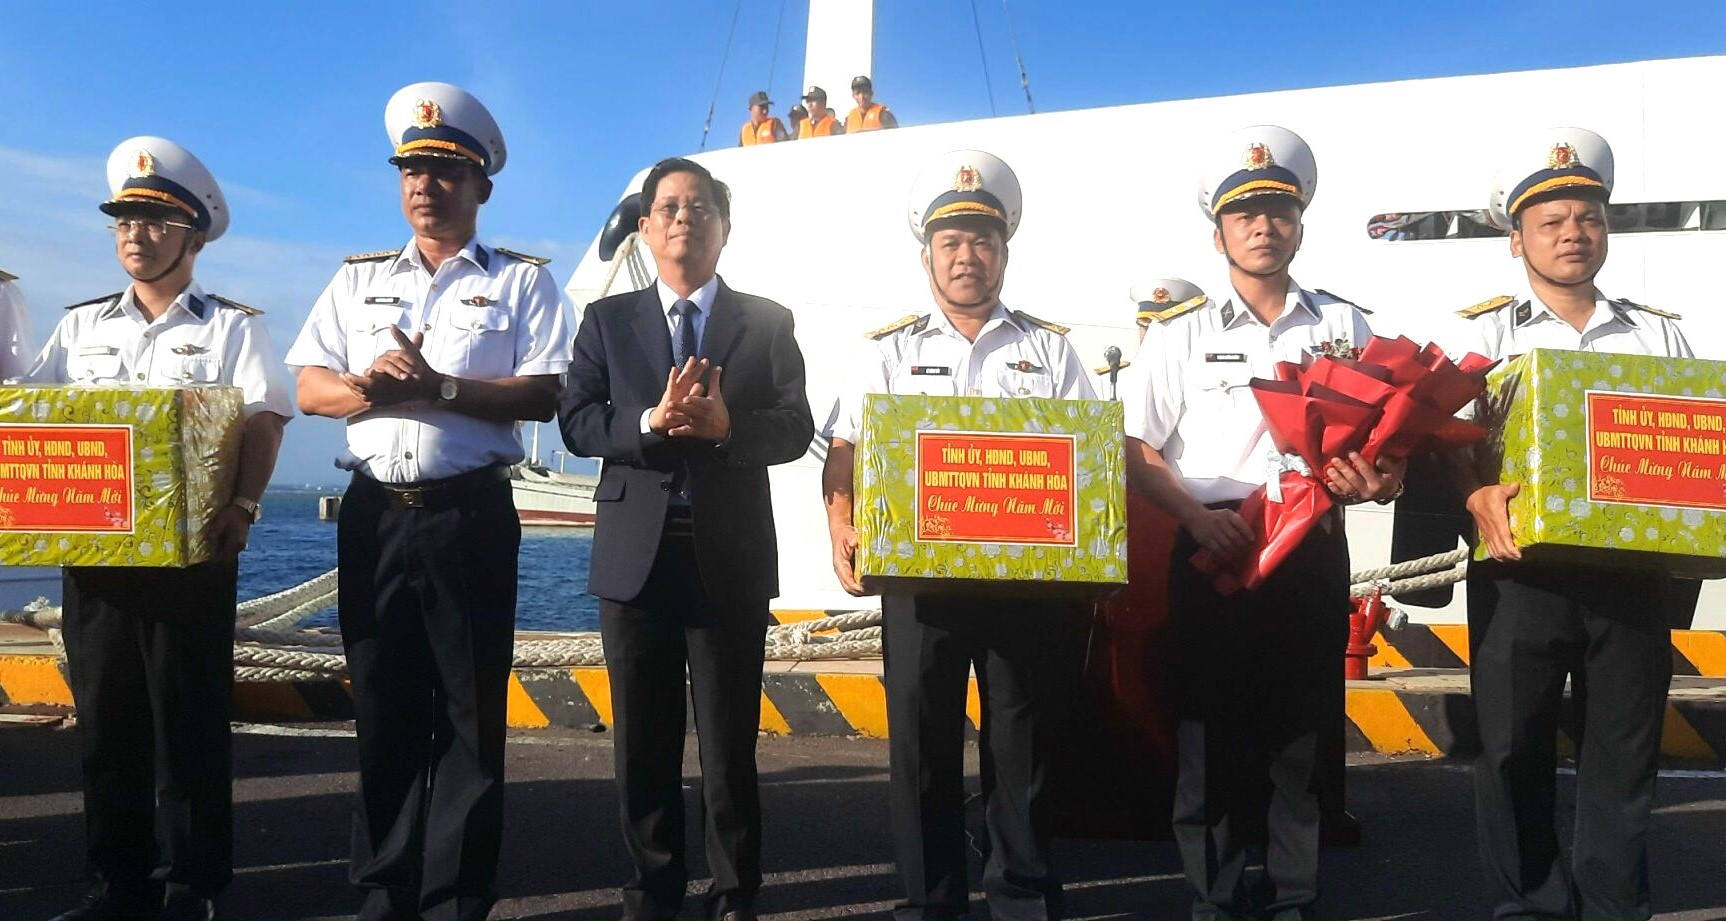 Chủ tịch UBND tỉnh Khánh Hoà và Bộ Tư lệnh Vùng 4 tặng quà cho các lực lượng tham gia đoàn công tác